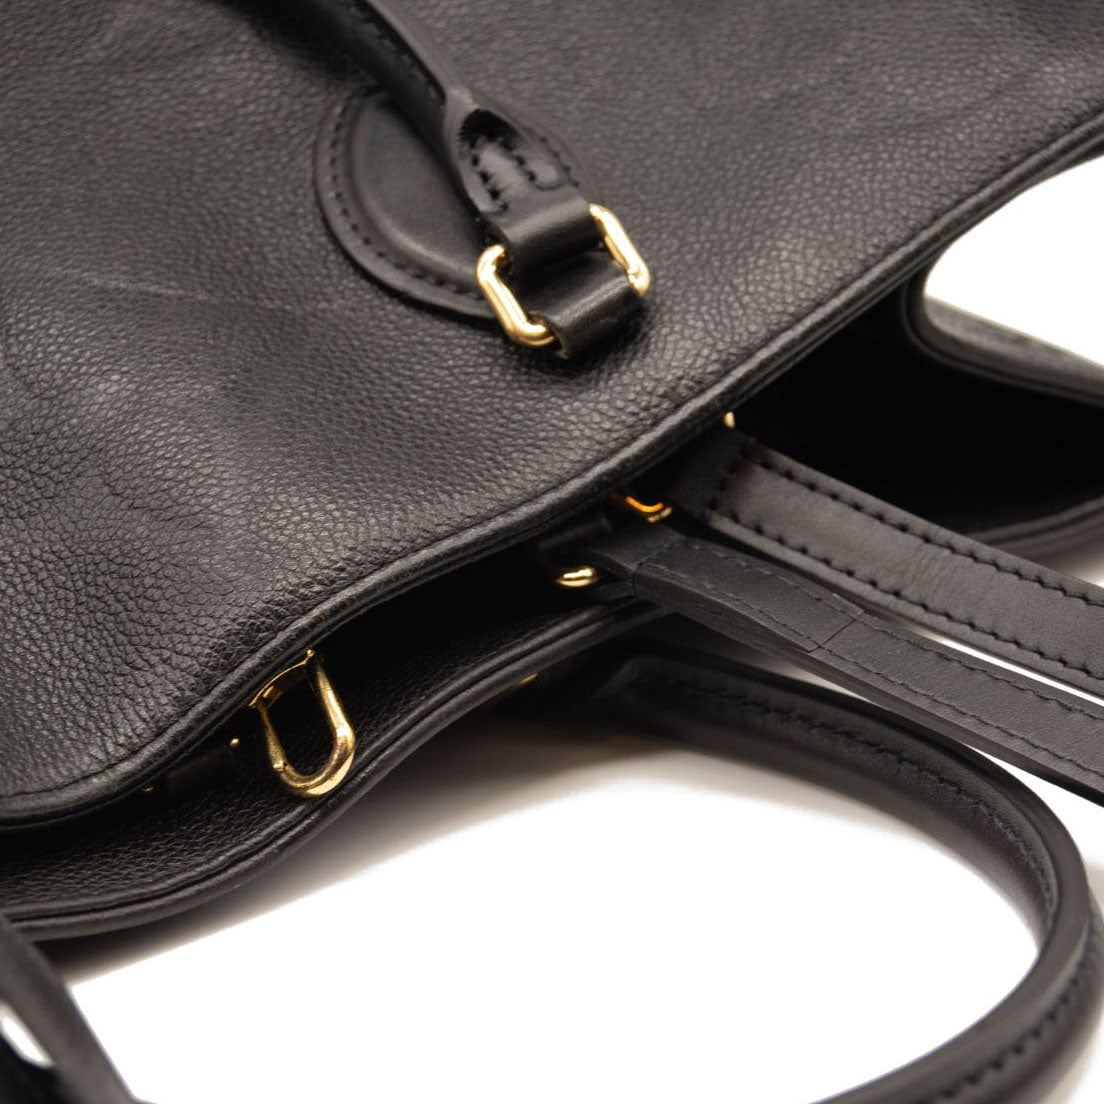 Louis Vuitton Monogram Giant Empreinte Leather Onthego GM Tote Bag